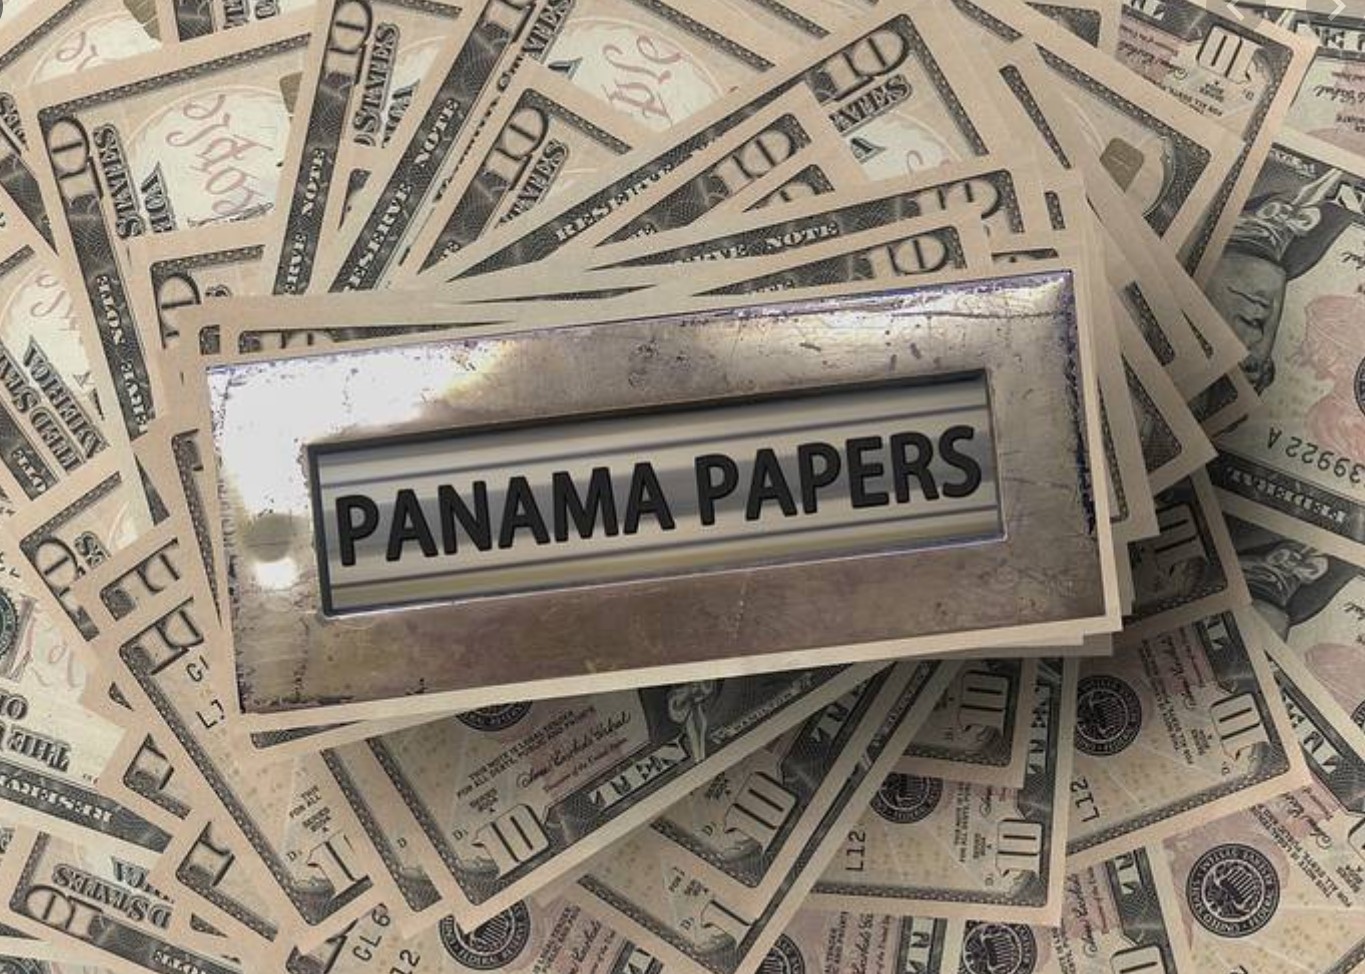 El día que se reveló la existencia de los “Panama Papers”